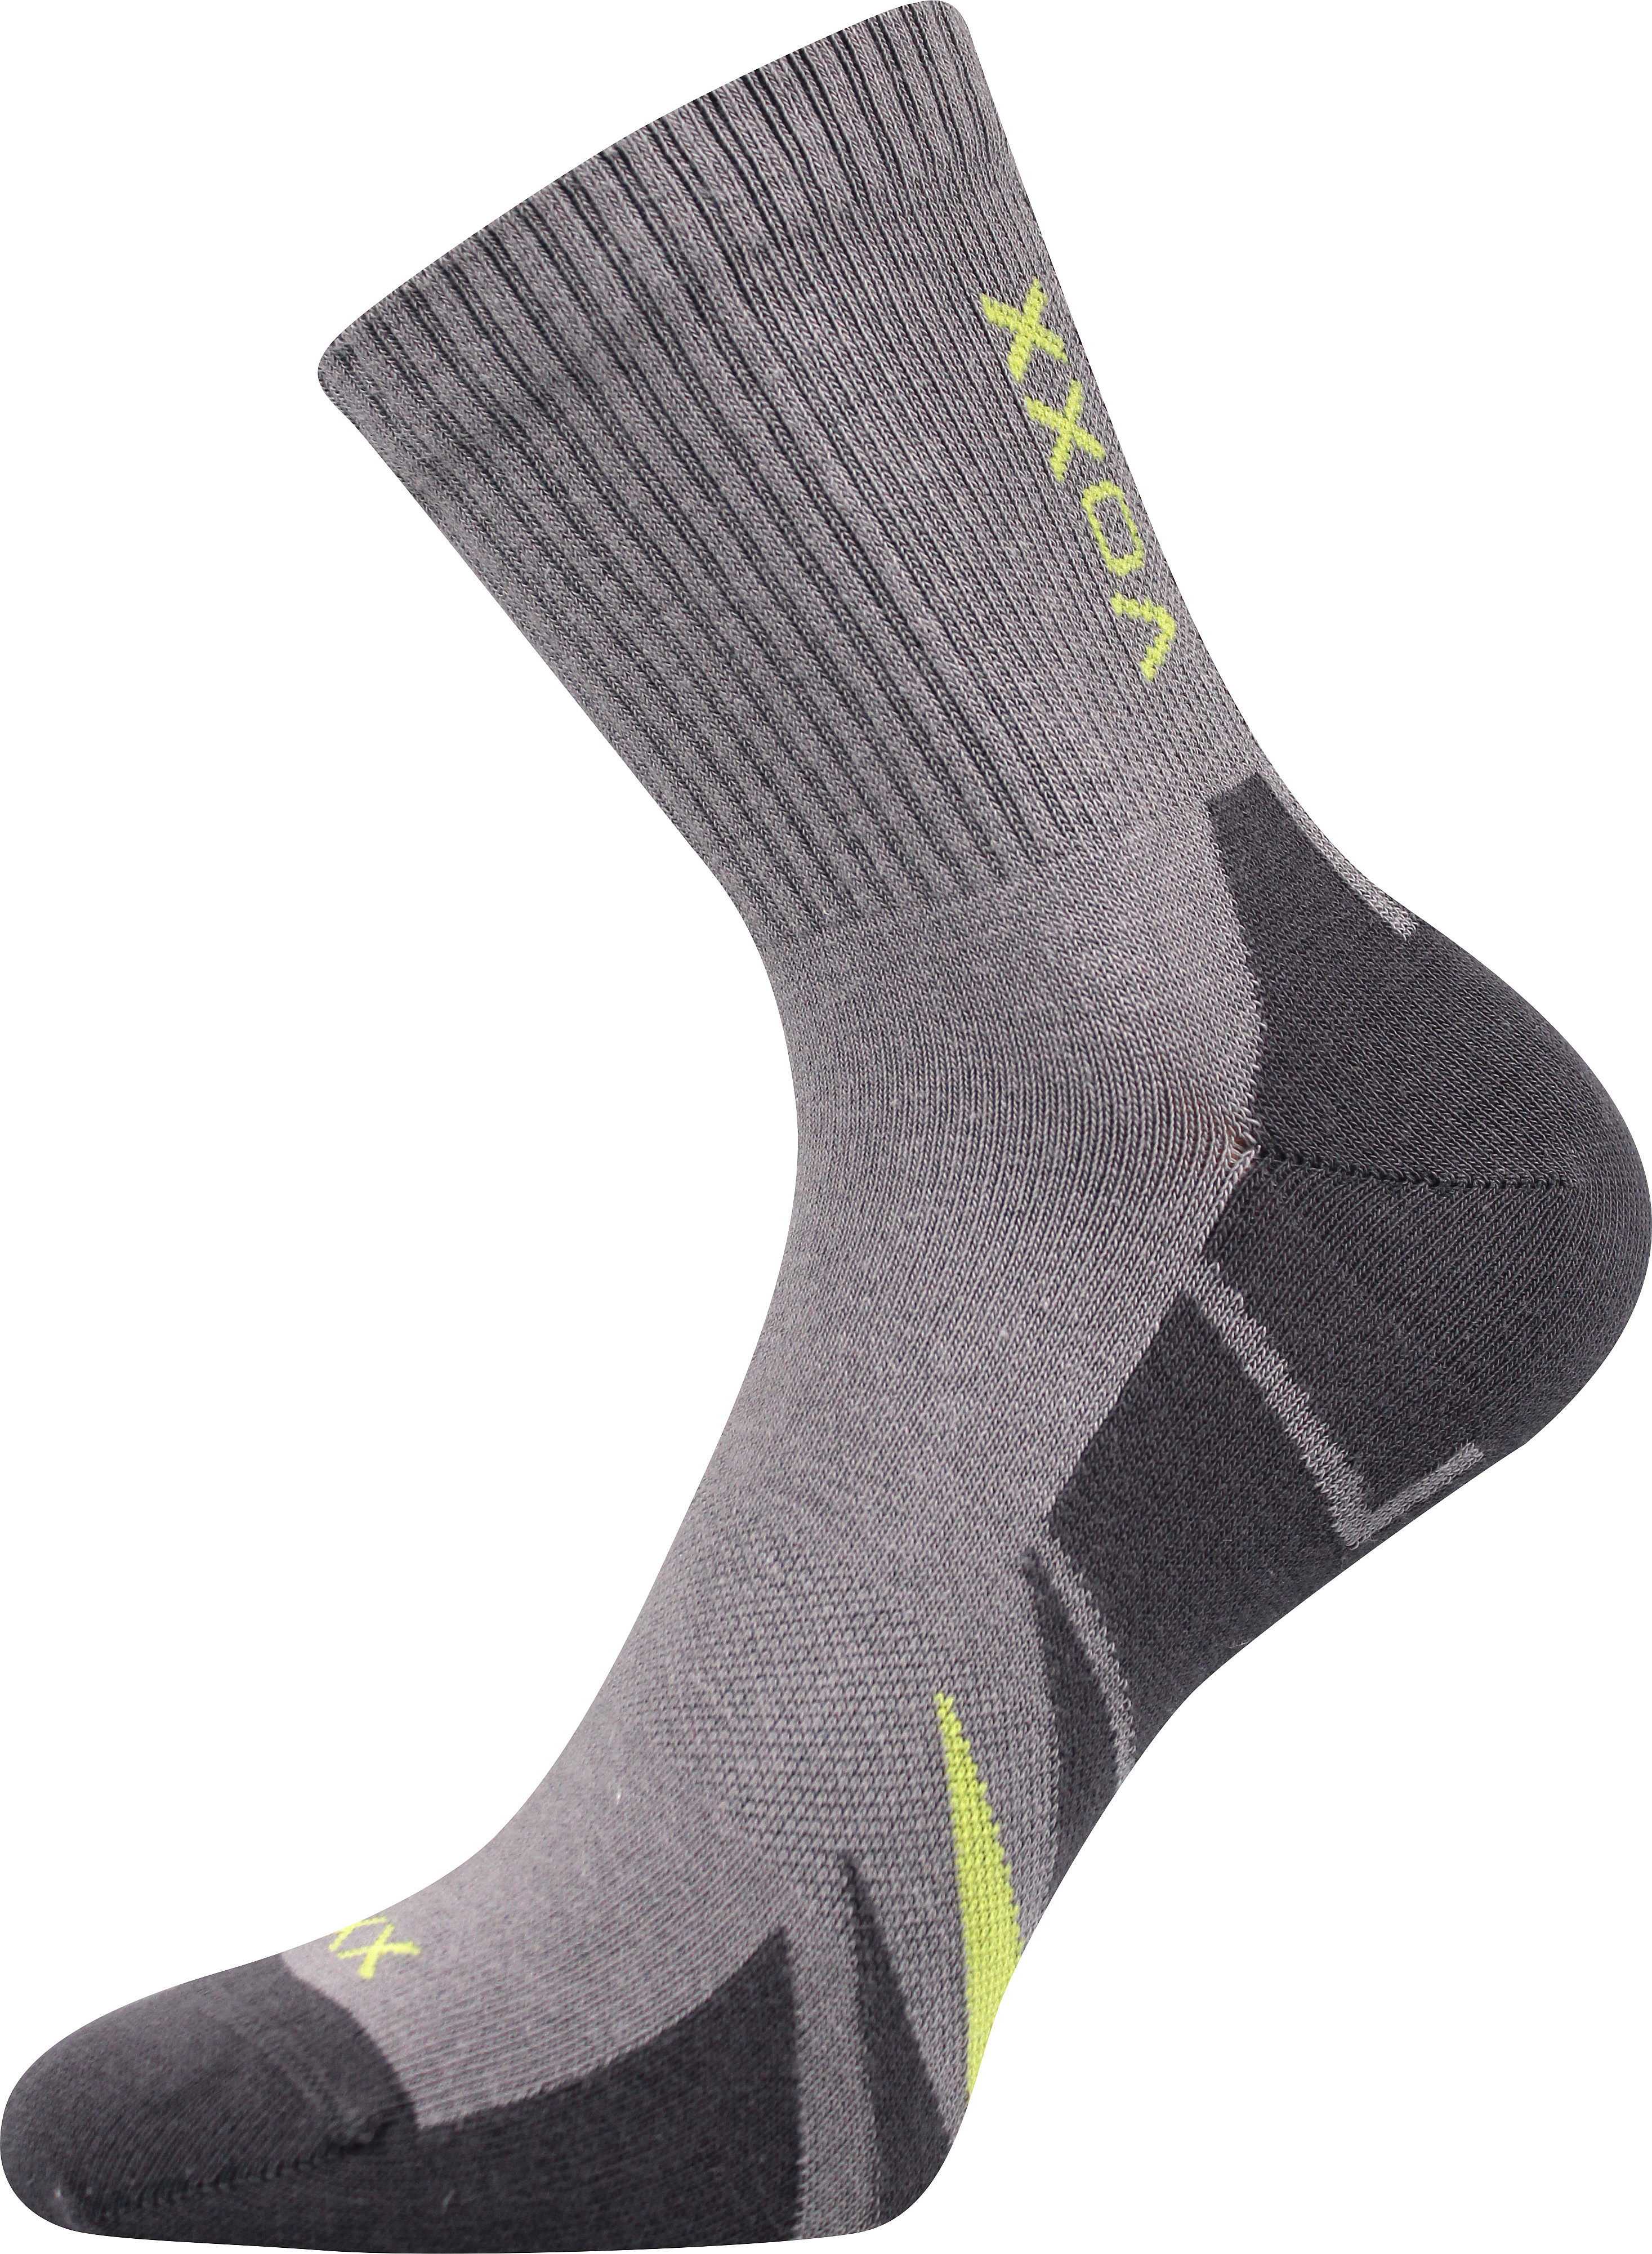 Ponožky sportovní Voxx Hermes - světle šedé-tmavě šedé, 47-50